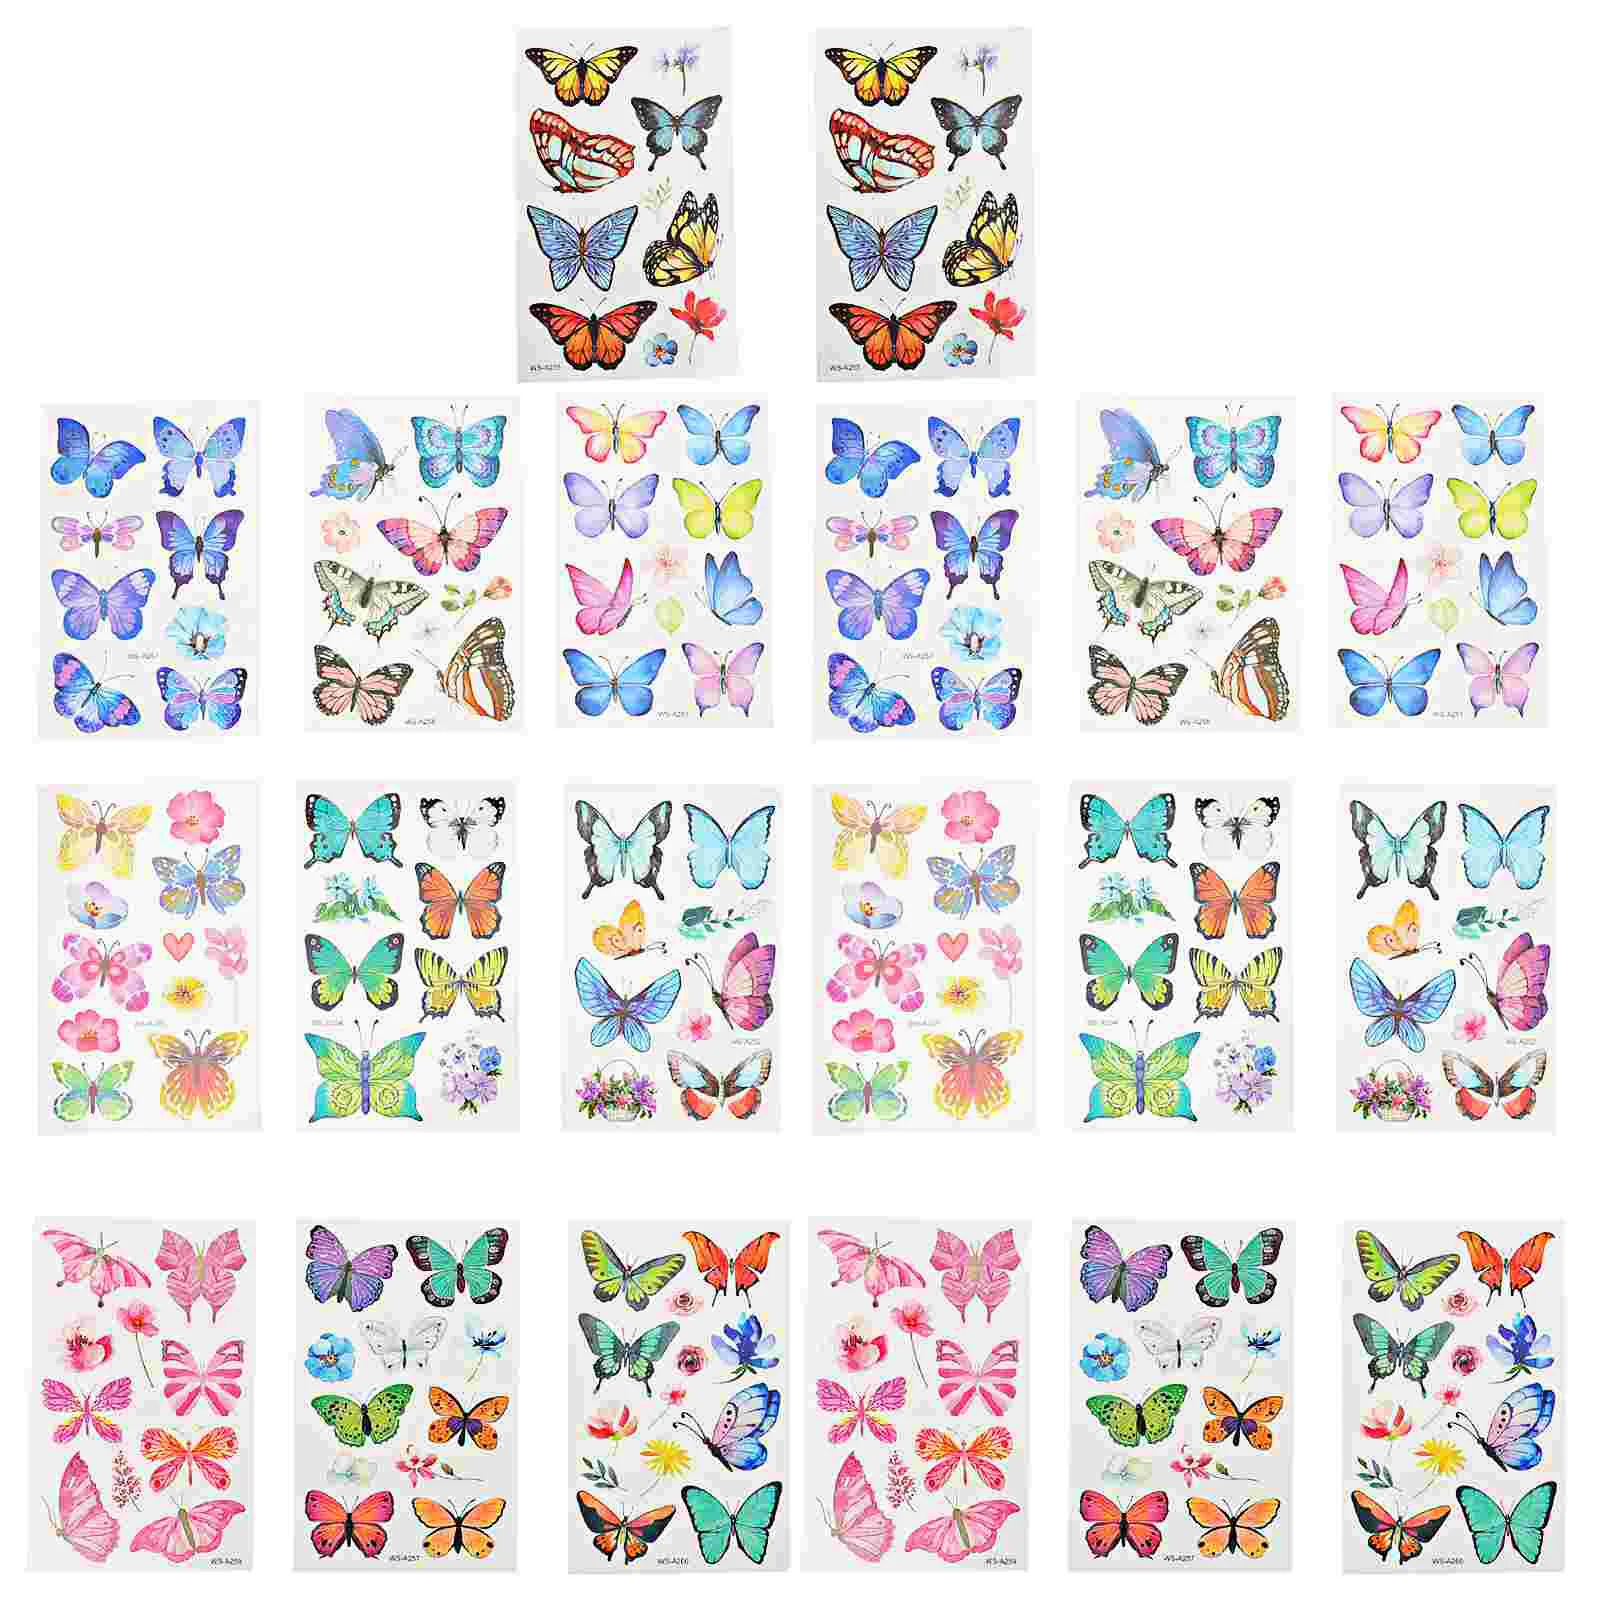 

20 Sheets Butterfly Stickers Tattoos for Children Temporary Men Girls Butterflies Clown